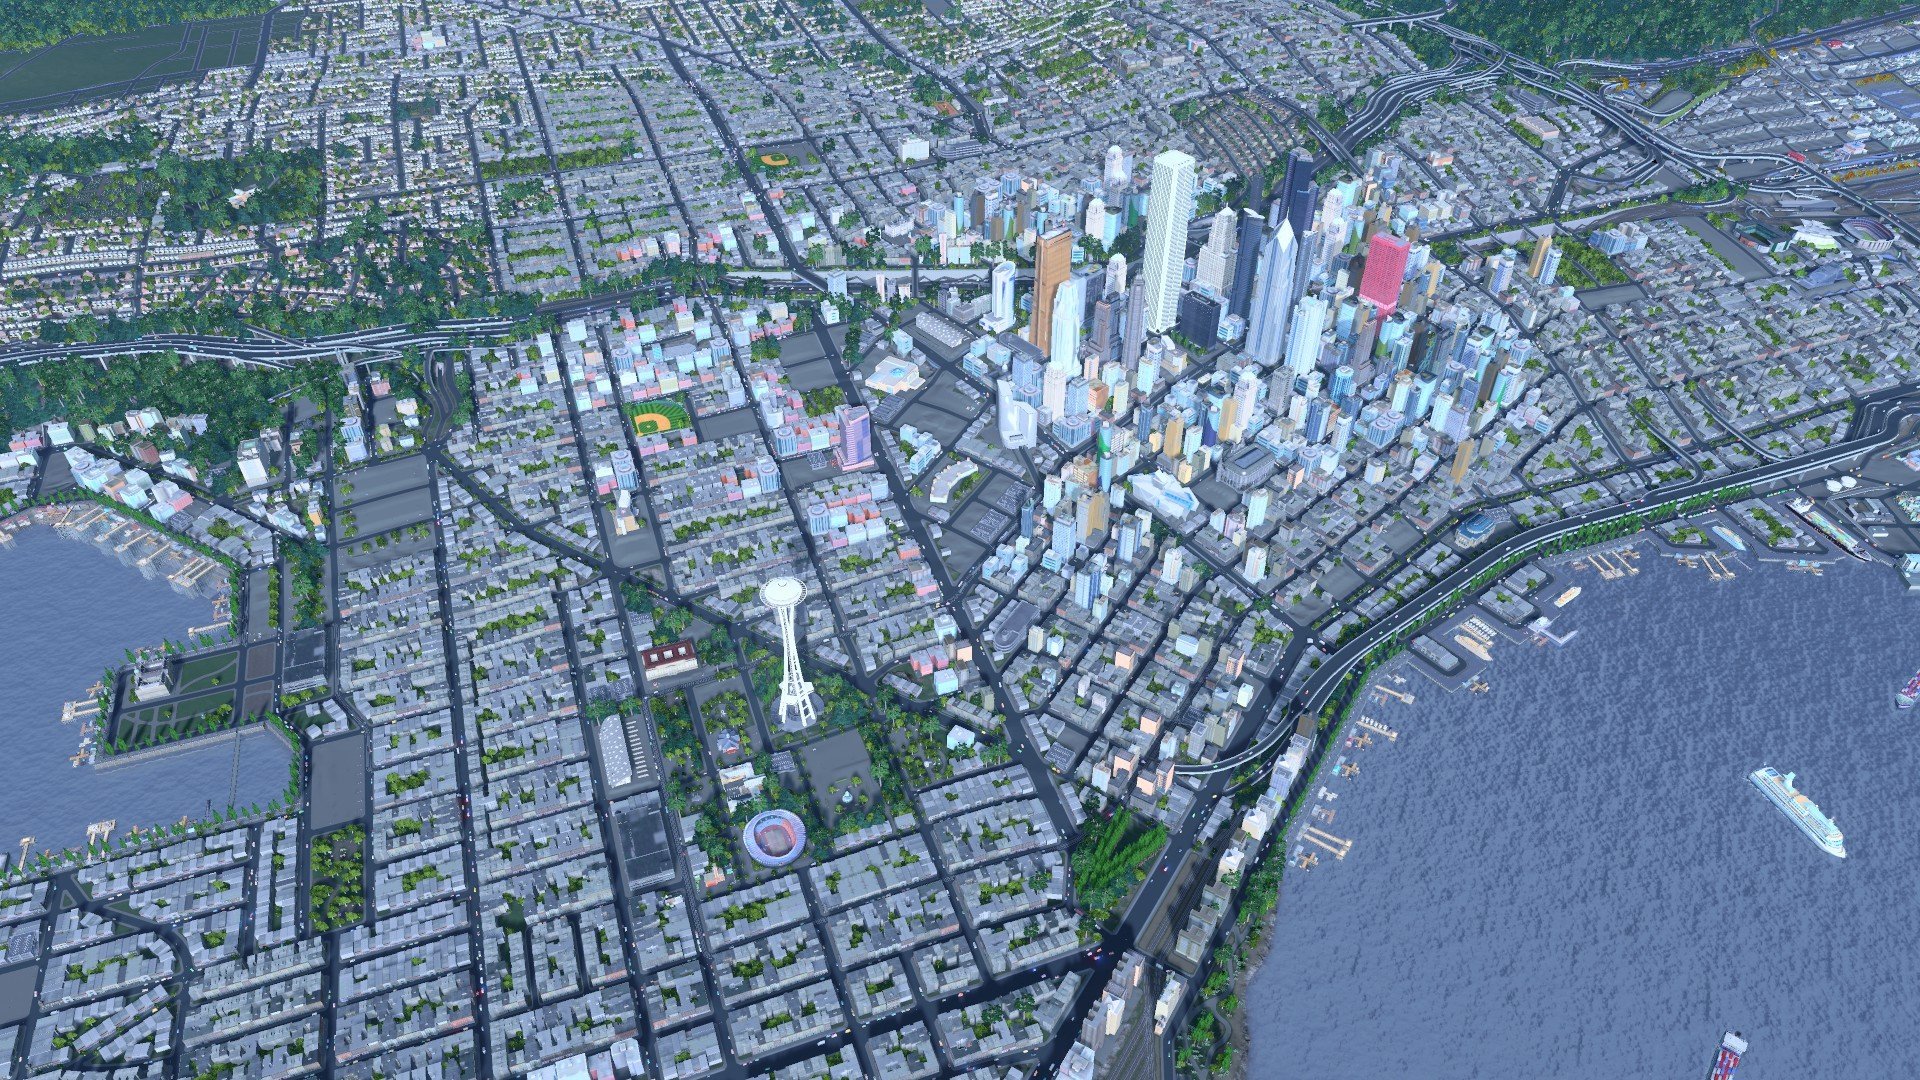 Cities Skylines 2 Release Date